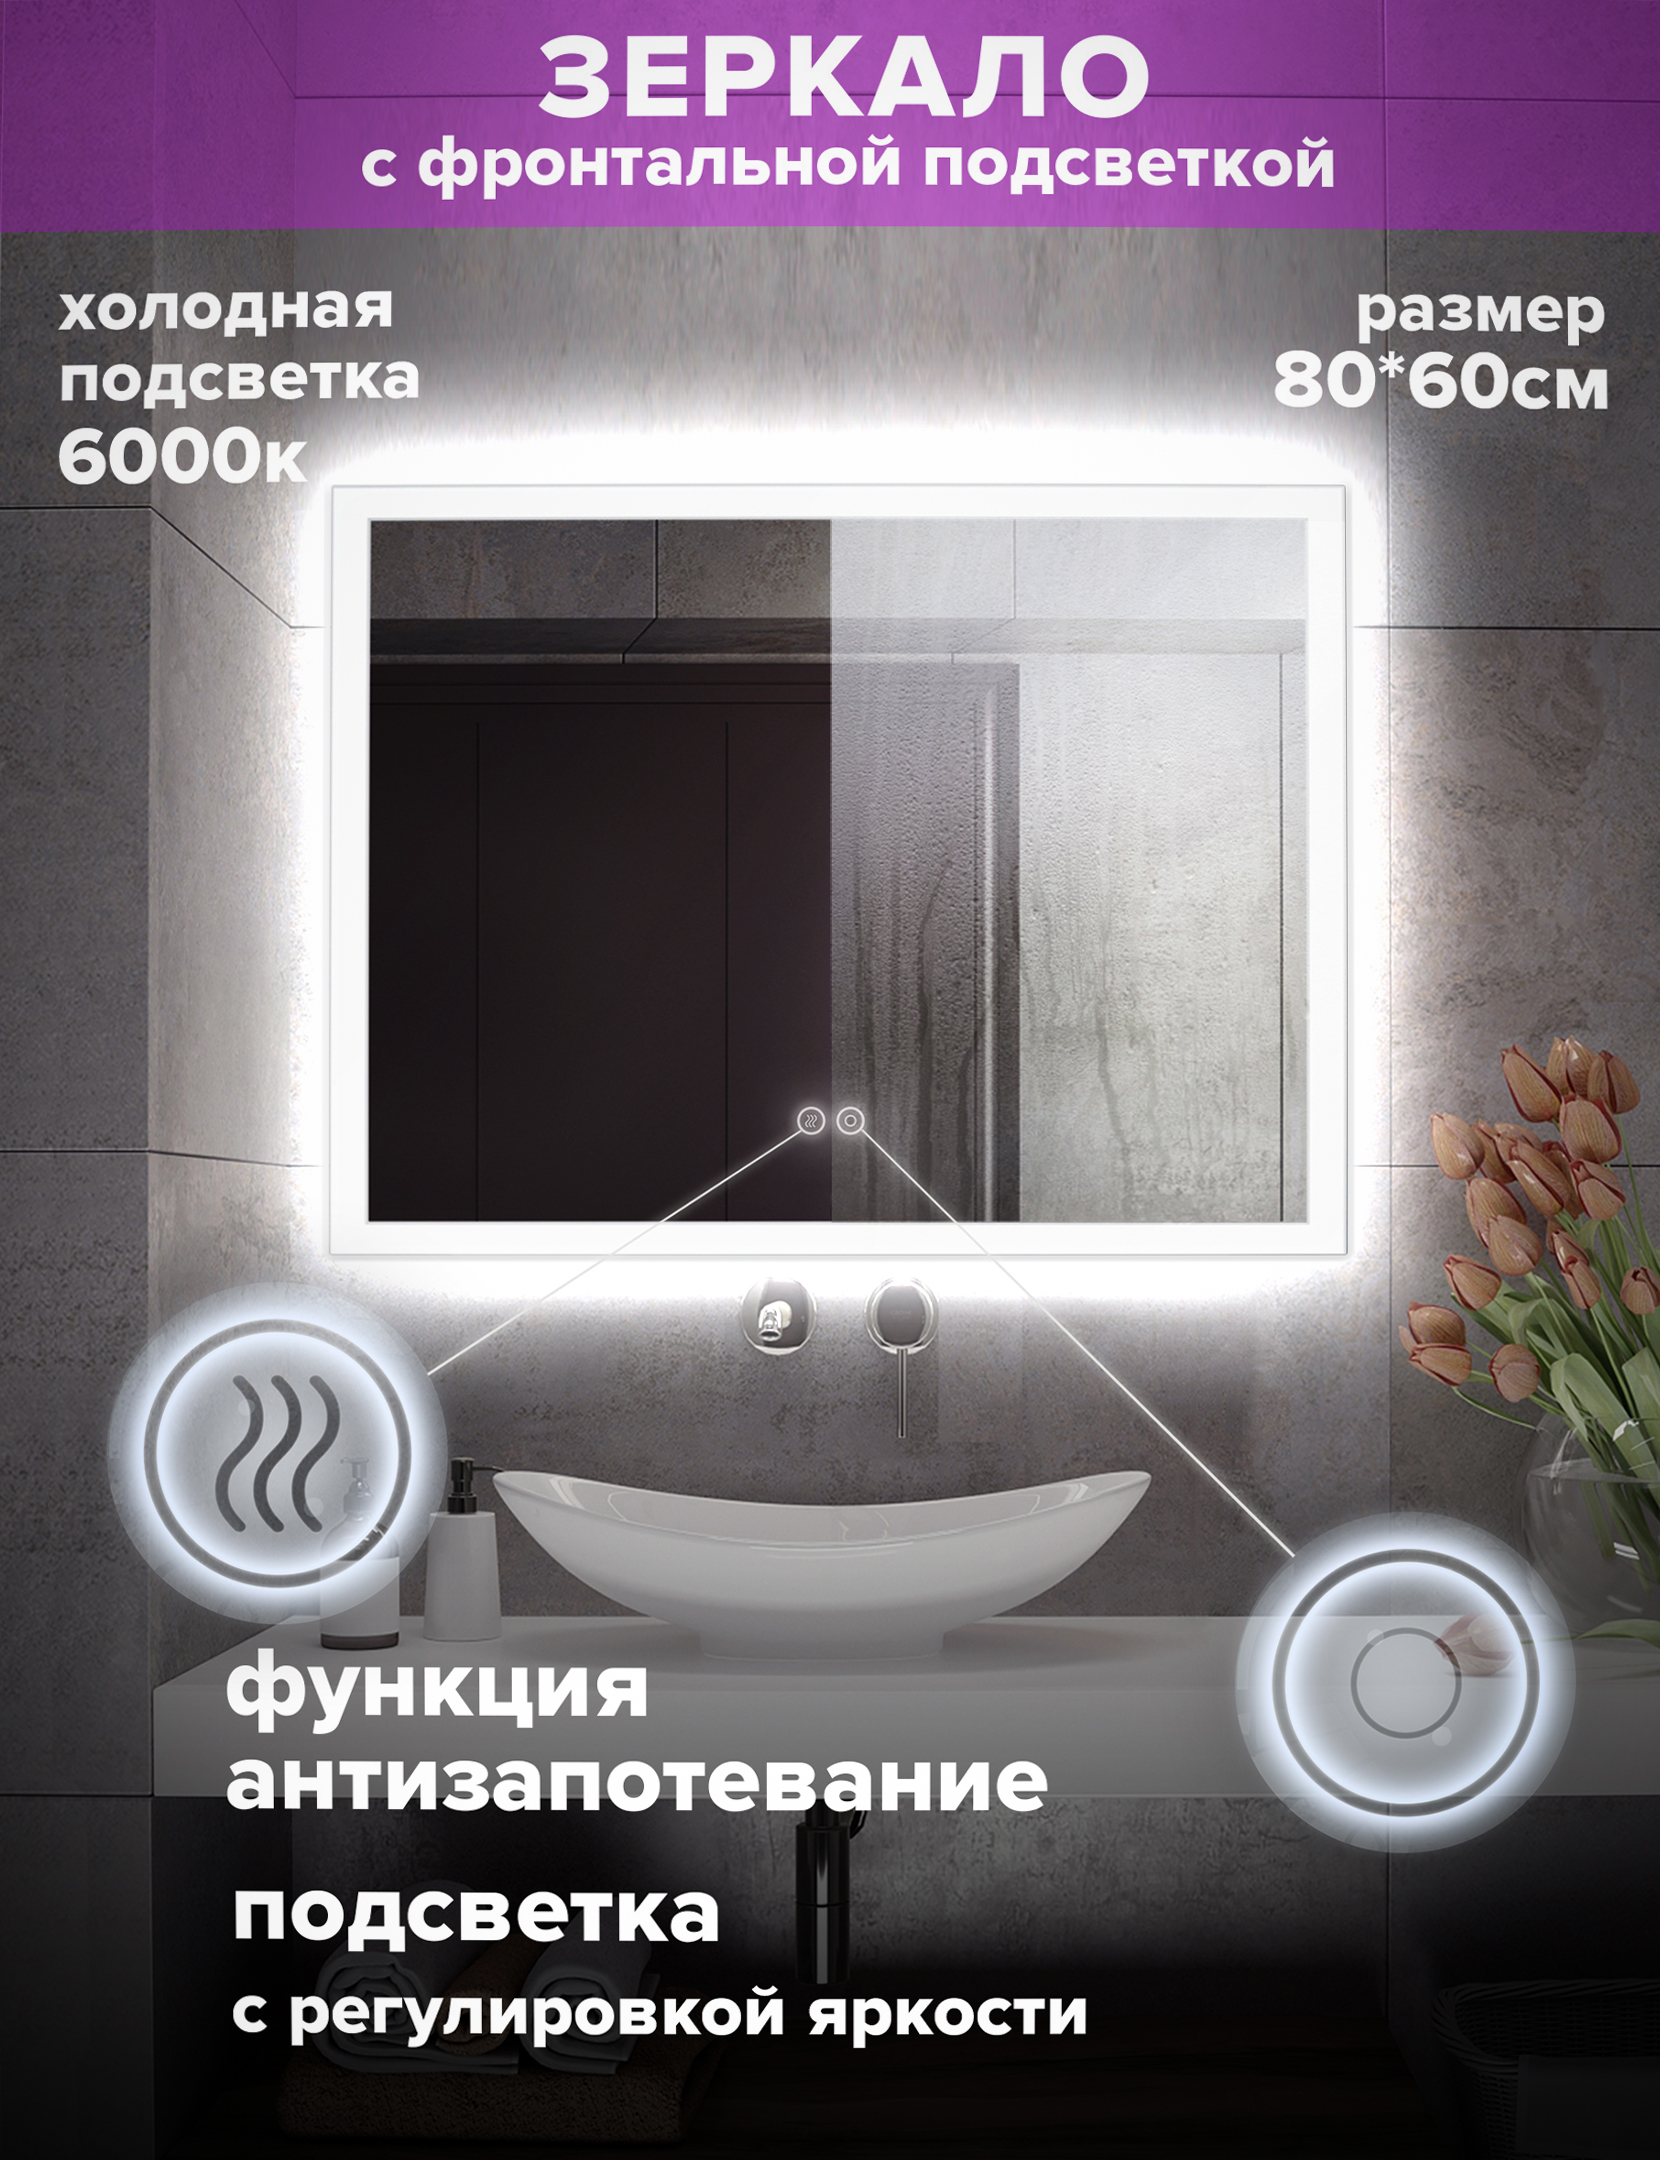 Зеркало для ванной Alfa Mirrors холодная подсветка 6000К, прямоугольн. 80*60см, MNiko-86Ah лампа filament груша 8вт e27 холодная navigator 61345